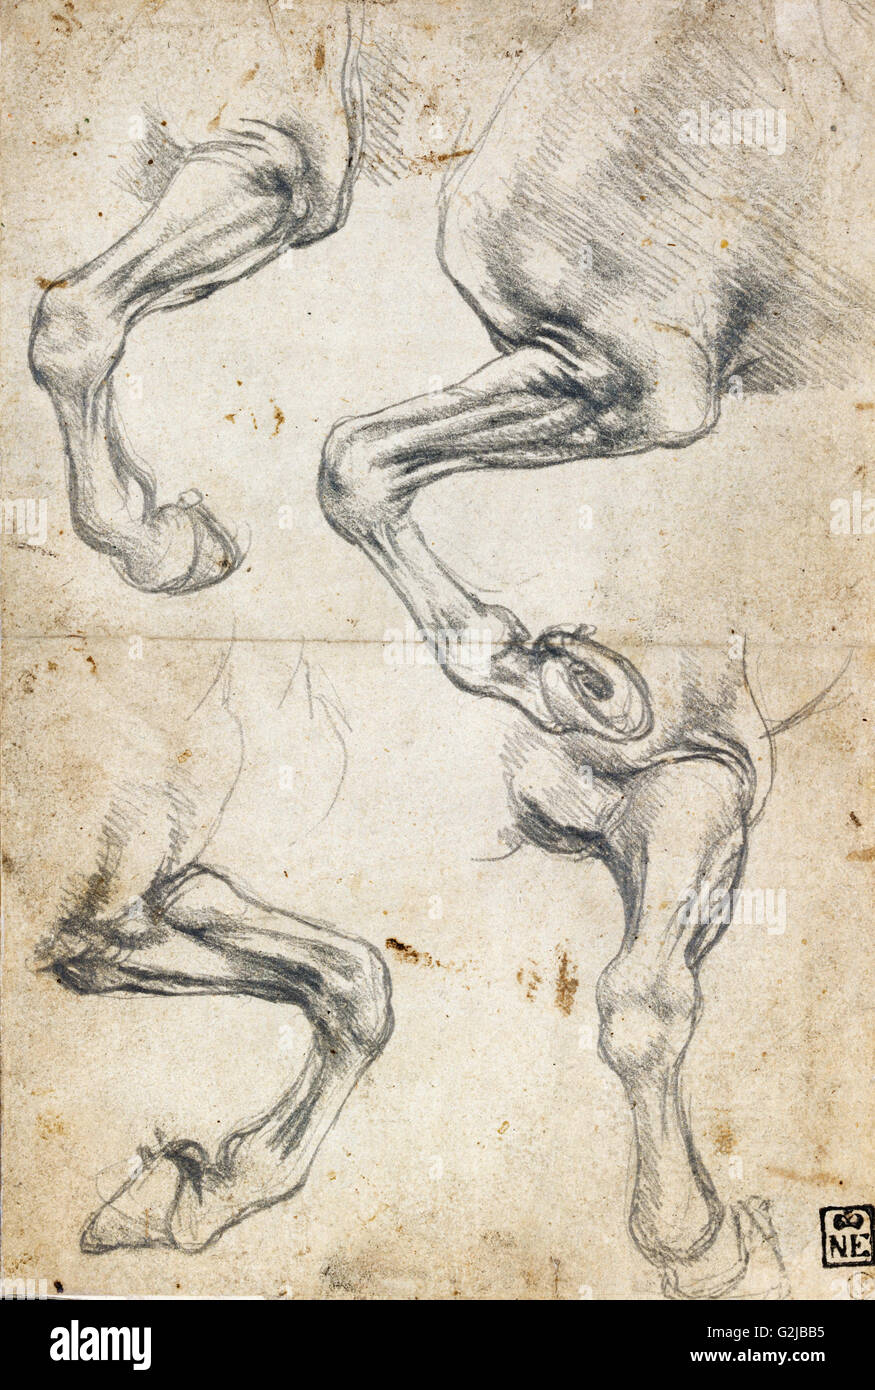 Leonardo da Vinci - Studien des Pferdes Bein - Museum of Fine Arts, Budapest Stockfoto